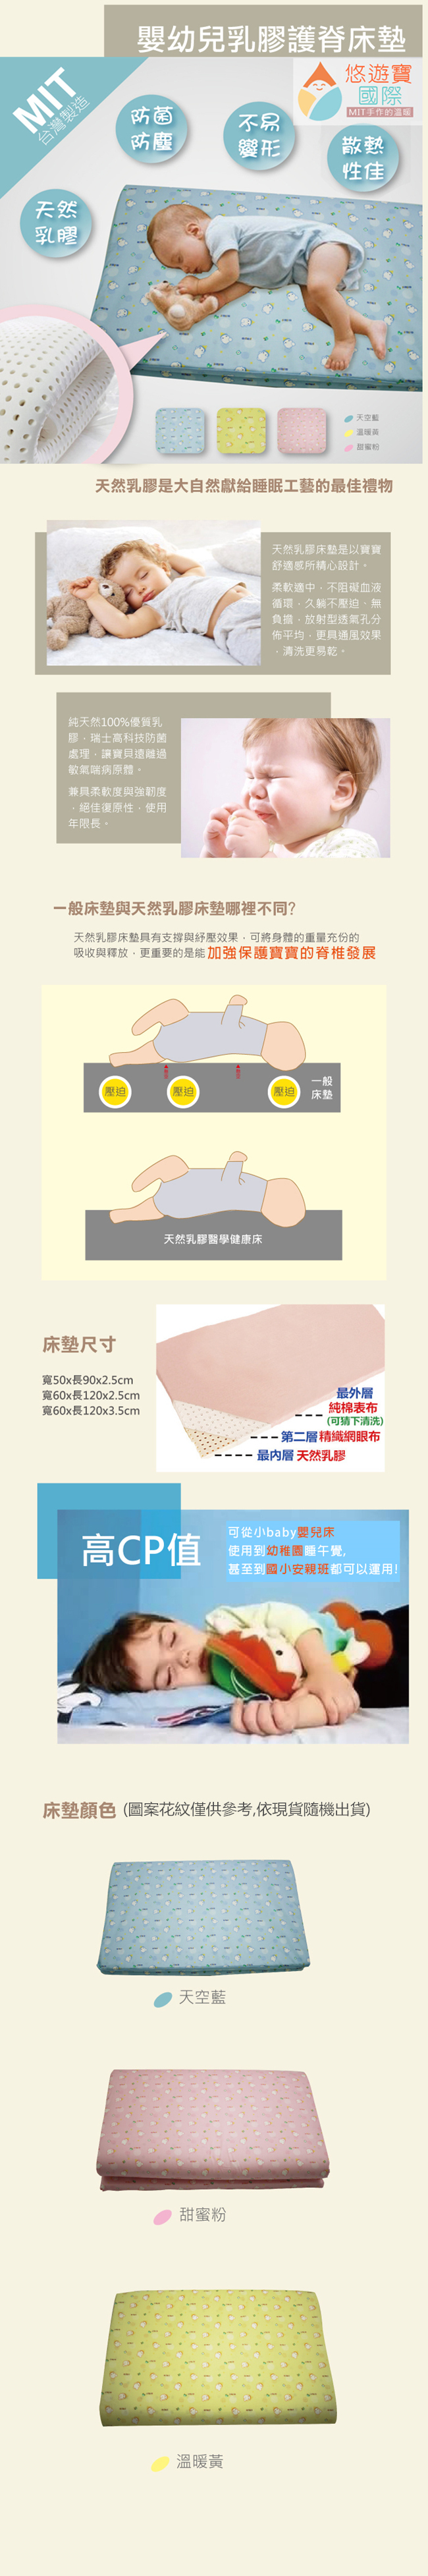 【悠遊寶國際】嬰幼兒乳膠護脊床墊60×120×2.5cm(3色可選)